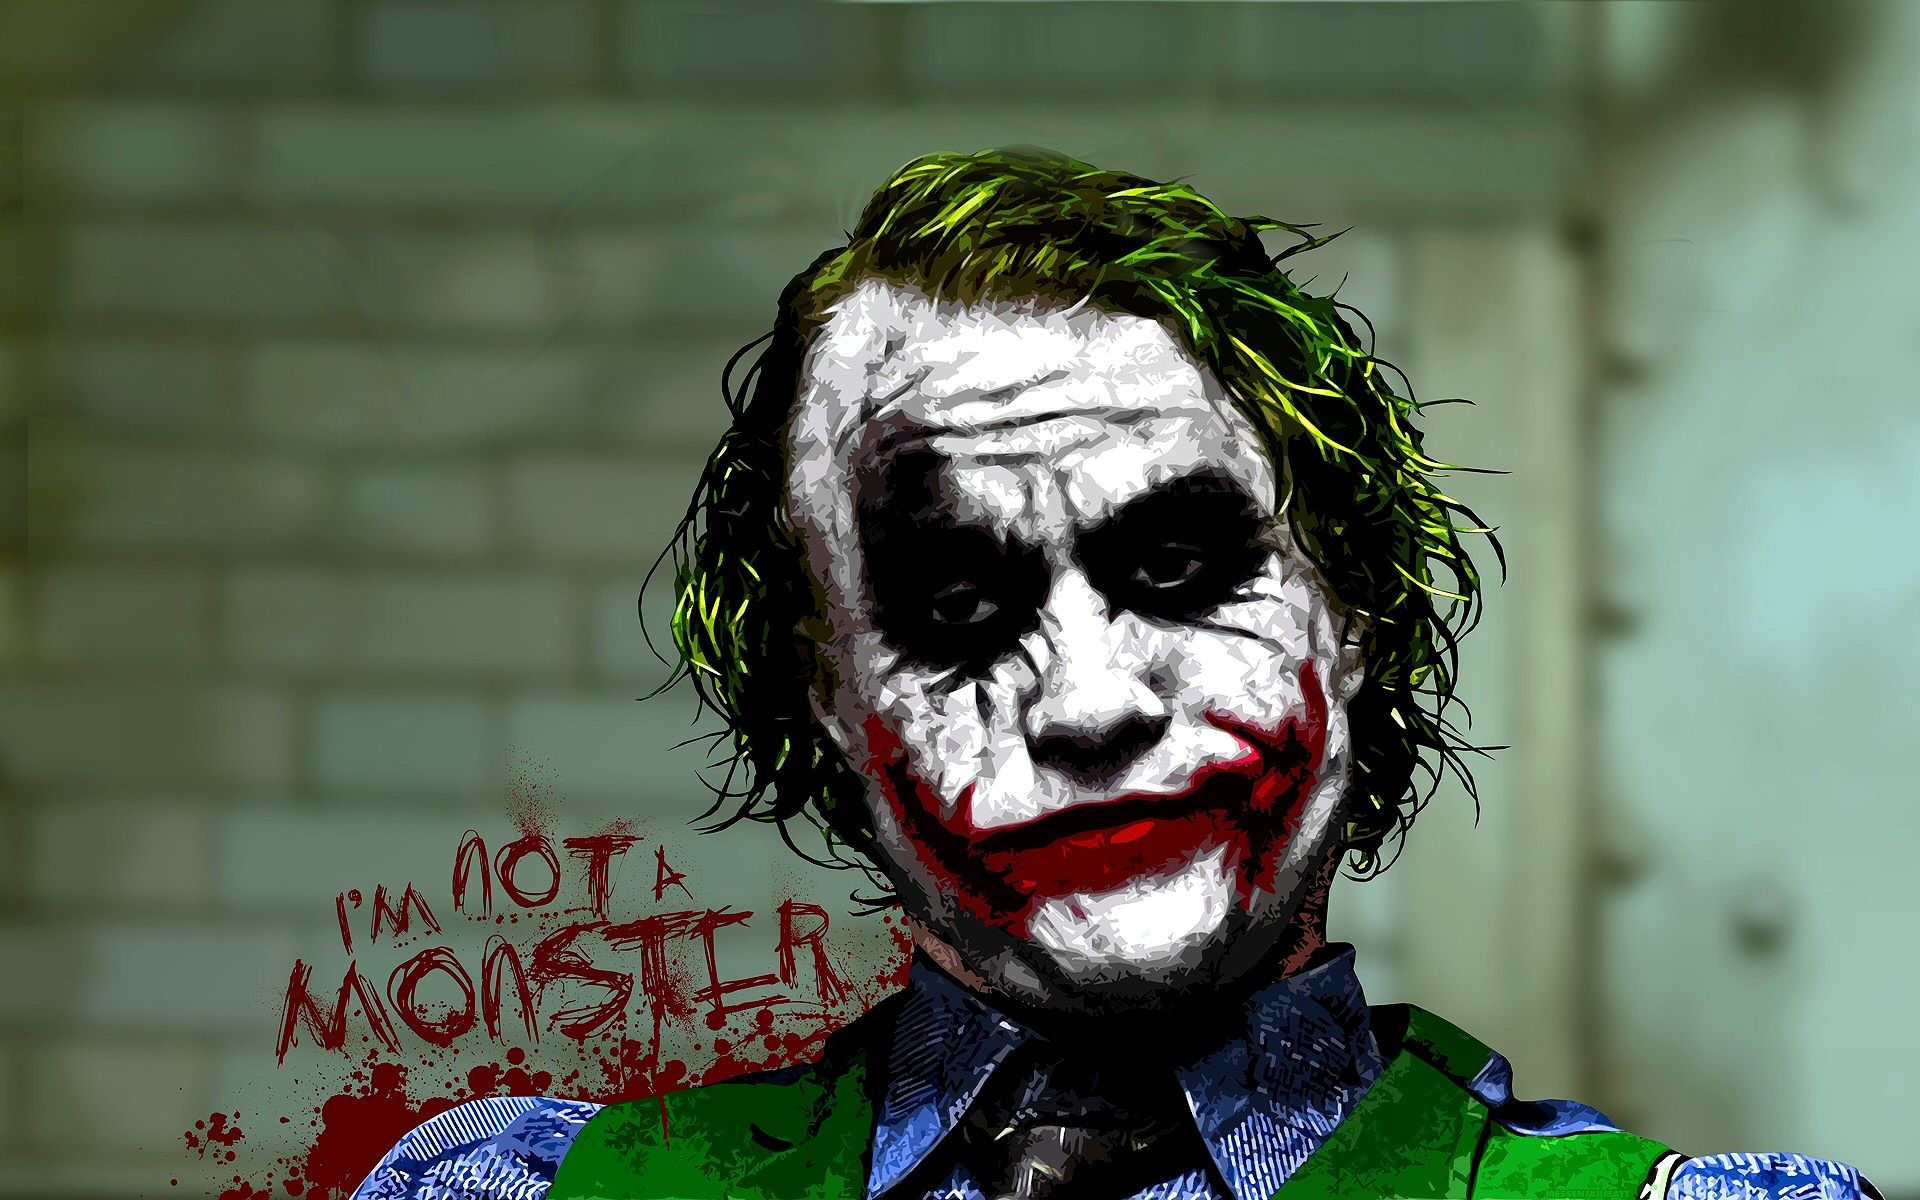 stupid badass moves - joker youtube background - I'M Monster